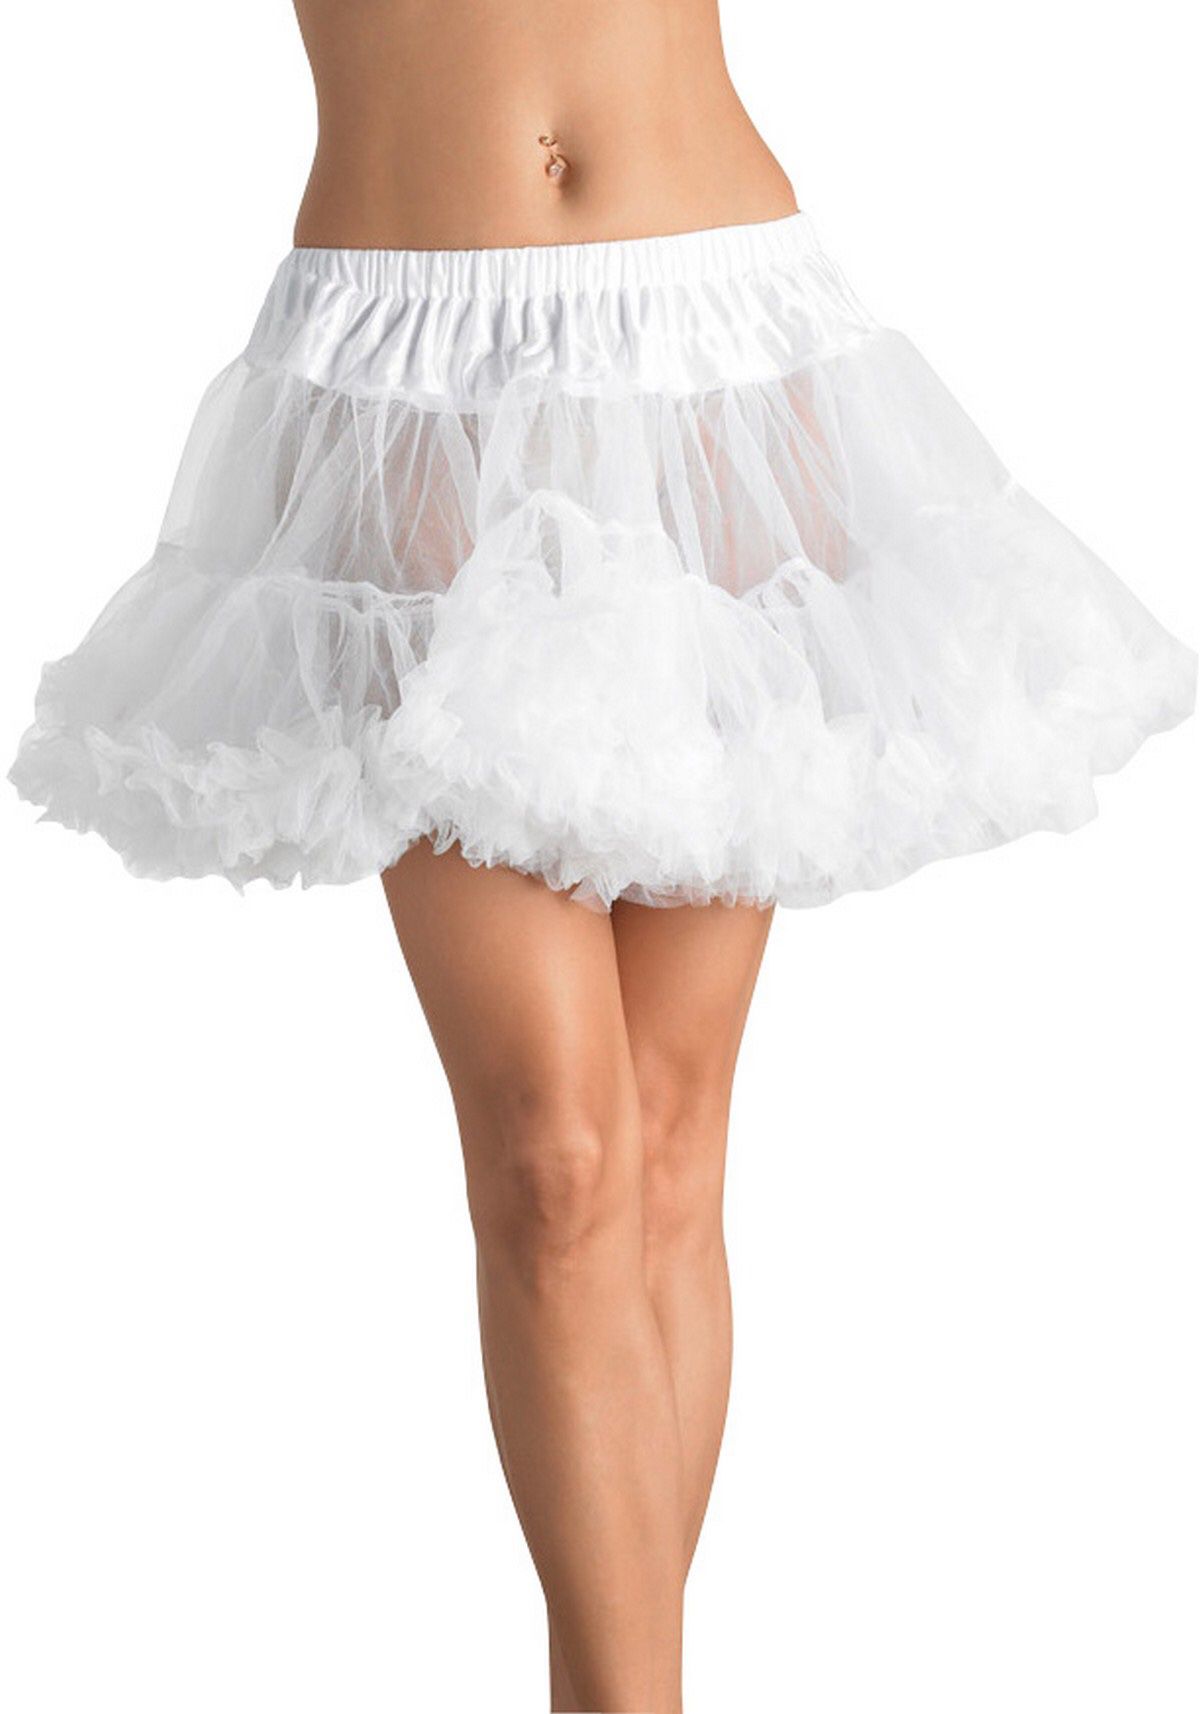 LEG AVENUE White Puffy Tutu Tulle Petticoat